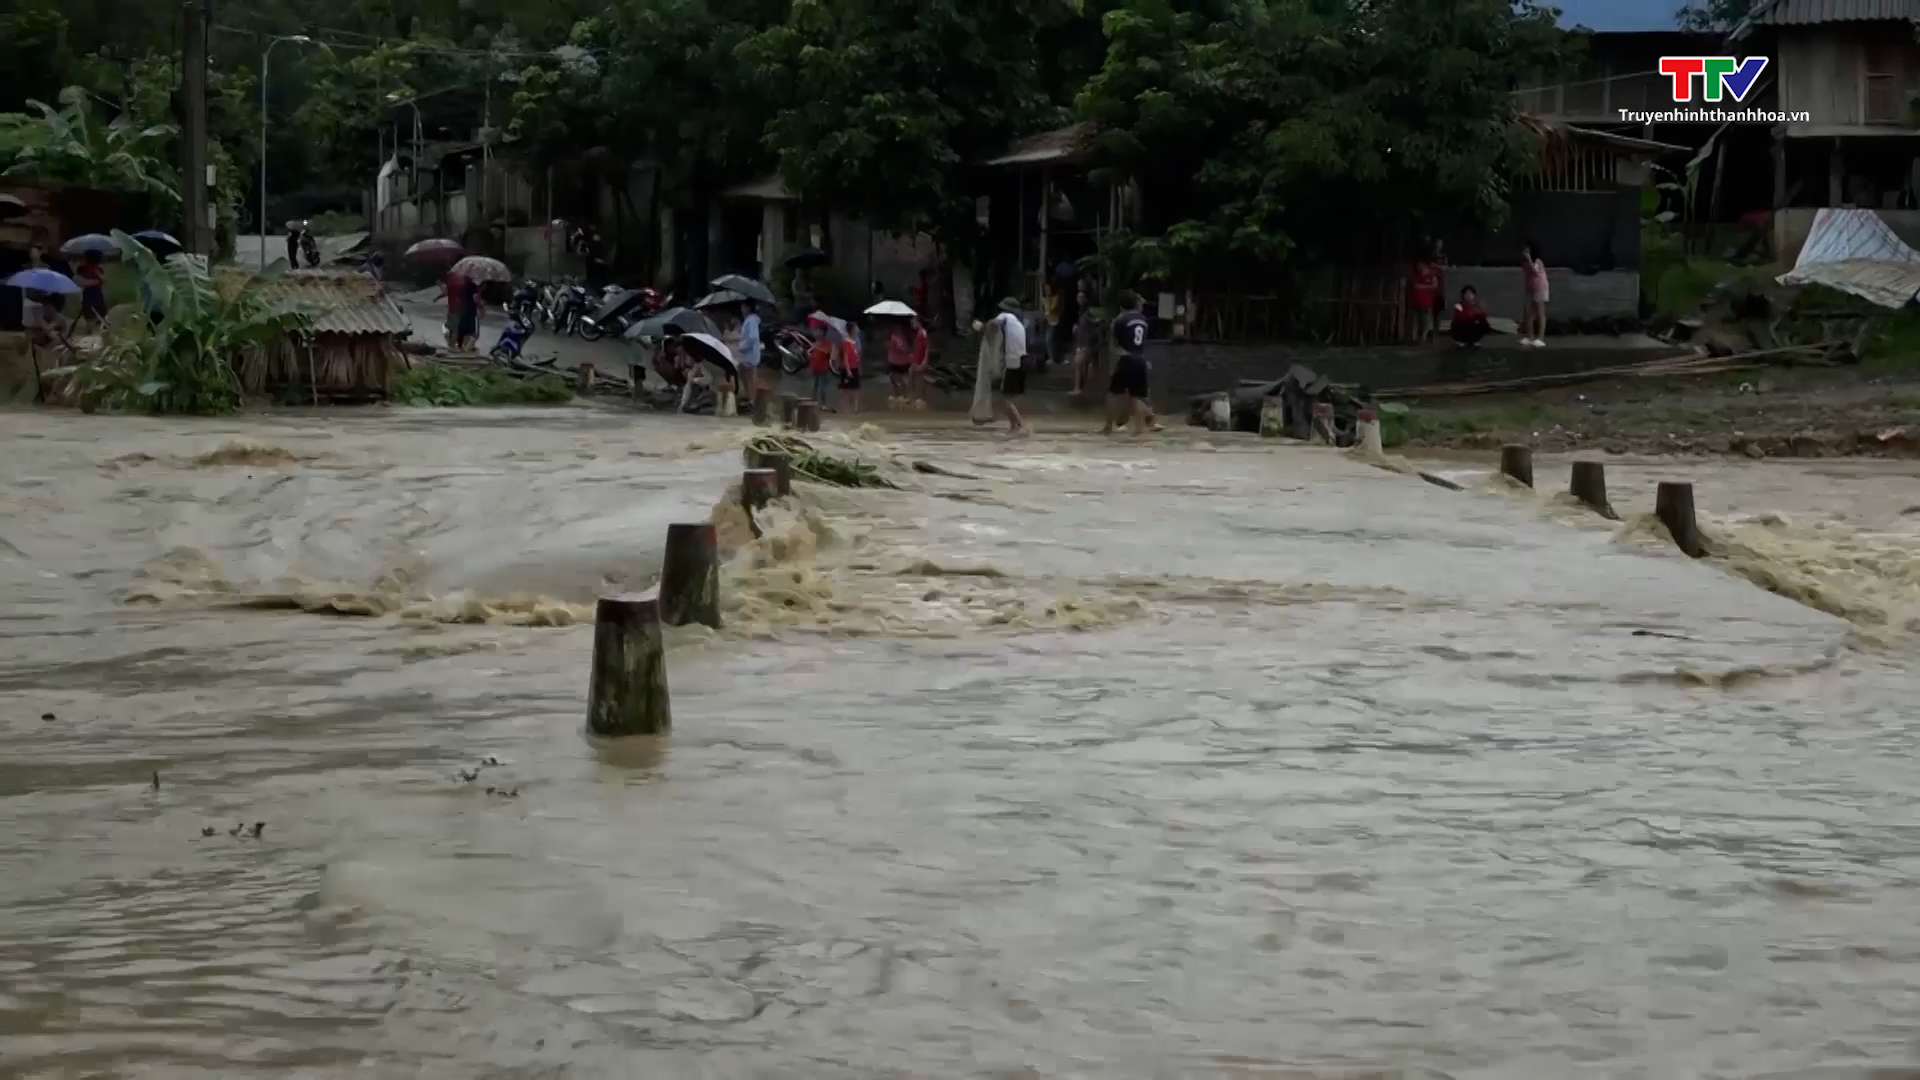 Huyện Quan Sơn: Mưa lớn trên diện rộng làm 1 người mất tích, nhiều tuyến đường bị sạt lở nghiêm trọng - Ảnh 2.